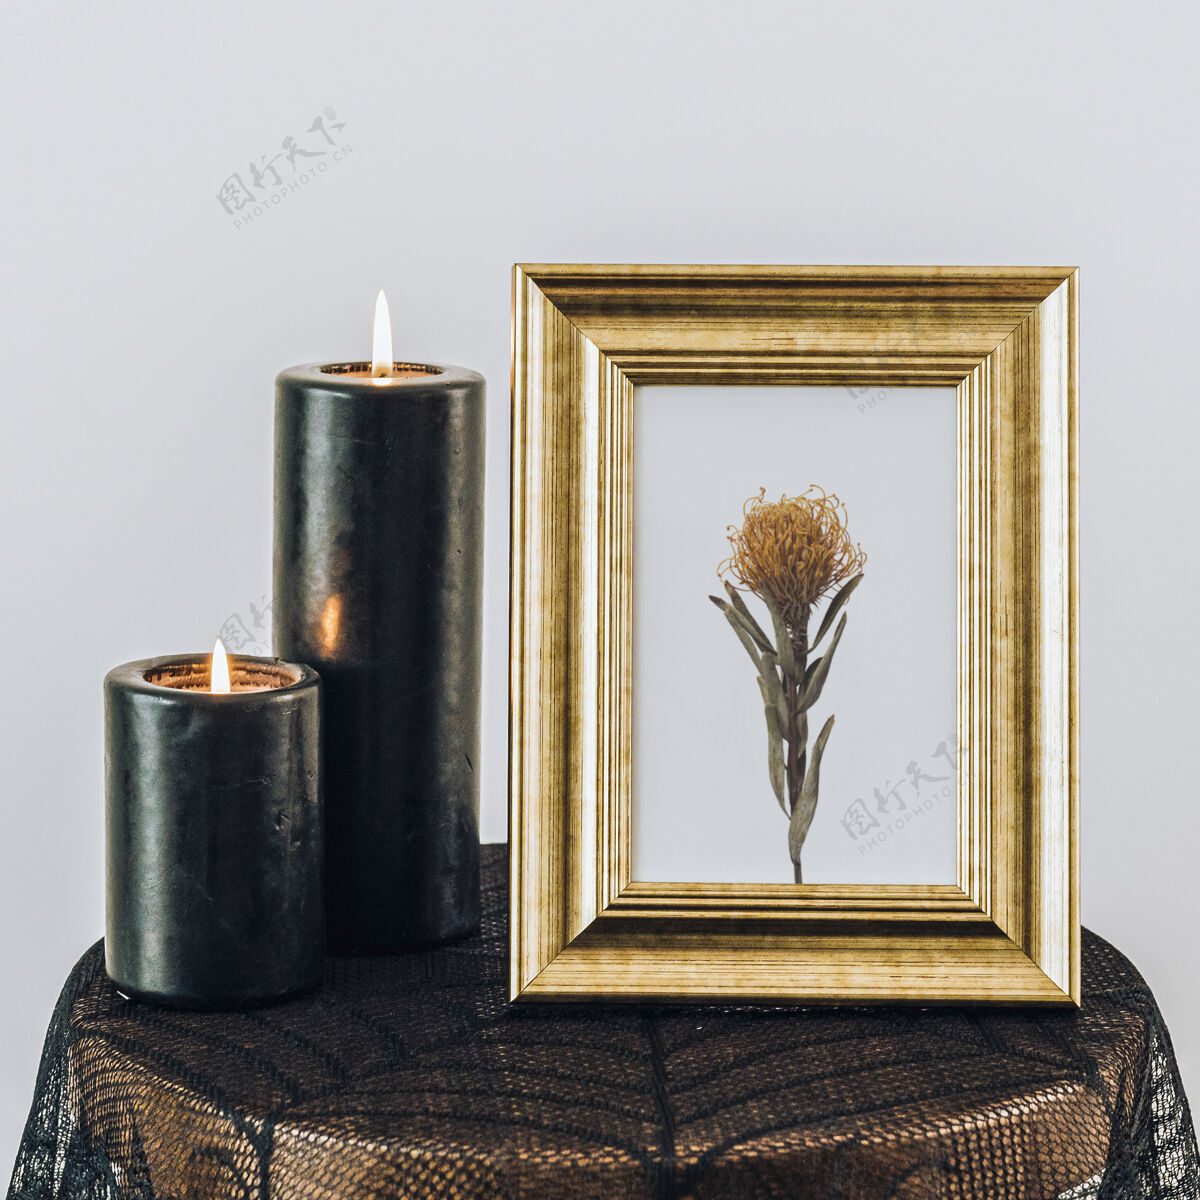 画框实物模型蜡烛旁的金色框架模型对象实物模型蜡烛桌布